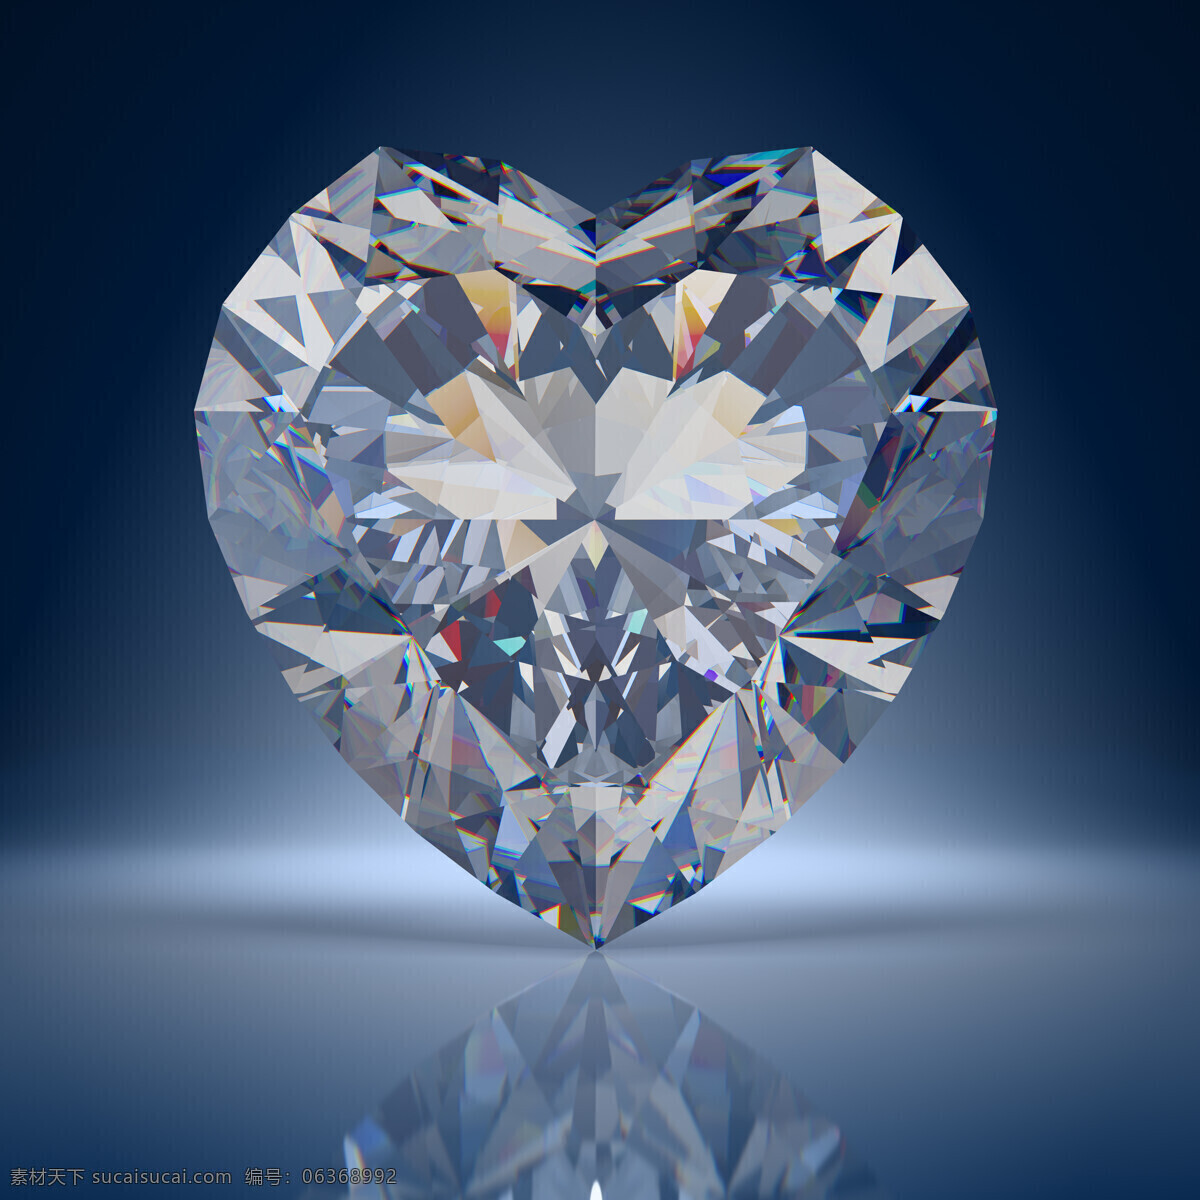 美丽 心形 砖石 心形砖石 倒影 奢侈品 钻石 珠宝 闪闪发亮 珠宝服饰 生活百科 蓝色